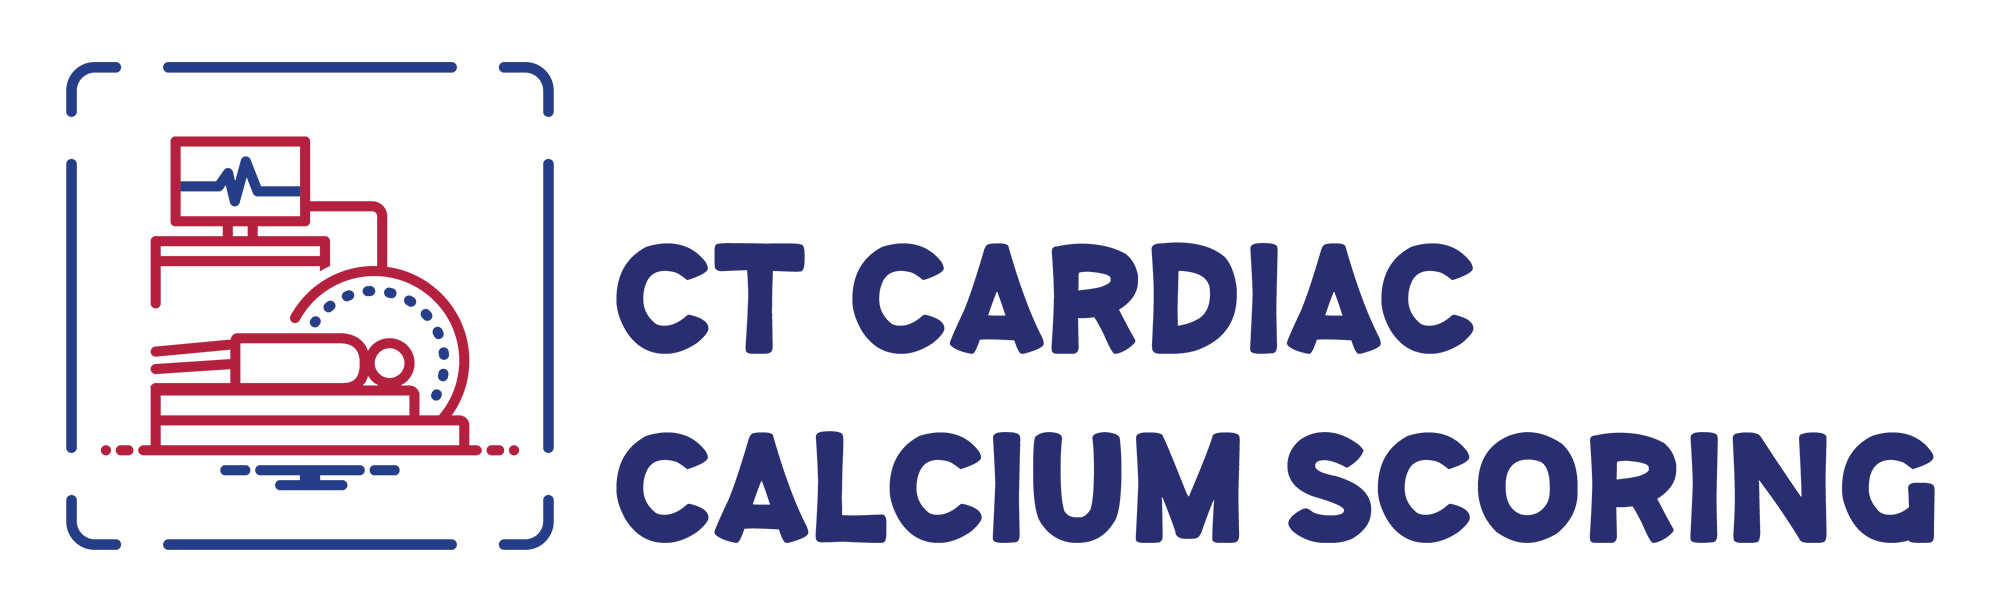 CT Cardiac Calcium Scoring, Borg and Ide Imaging